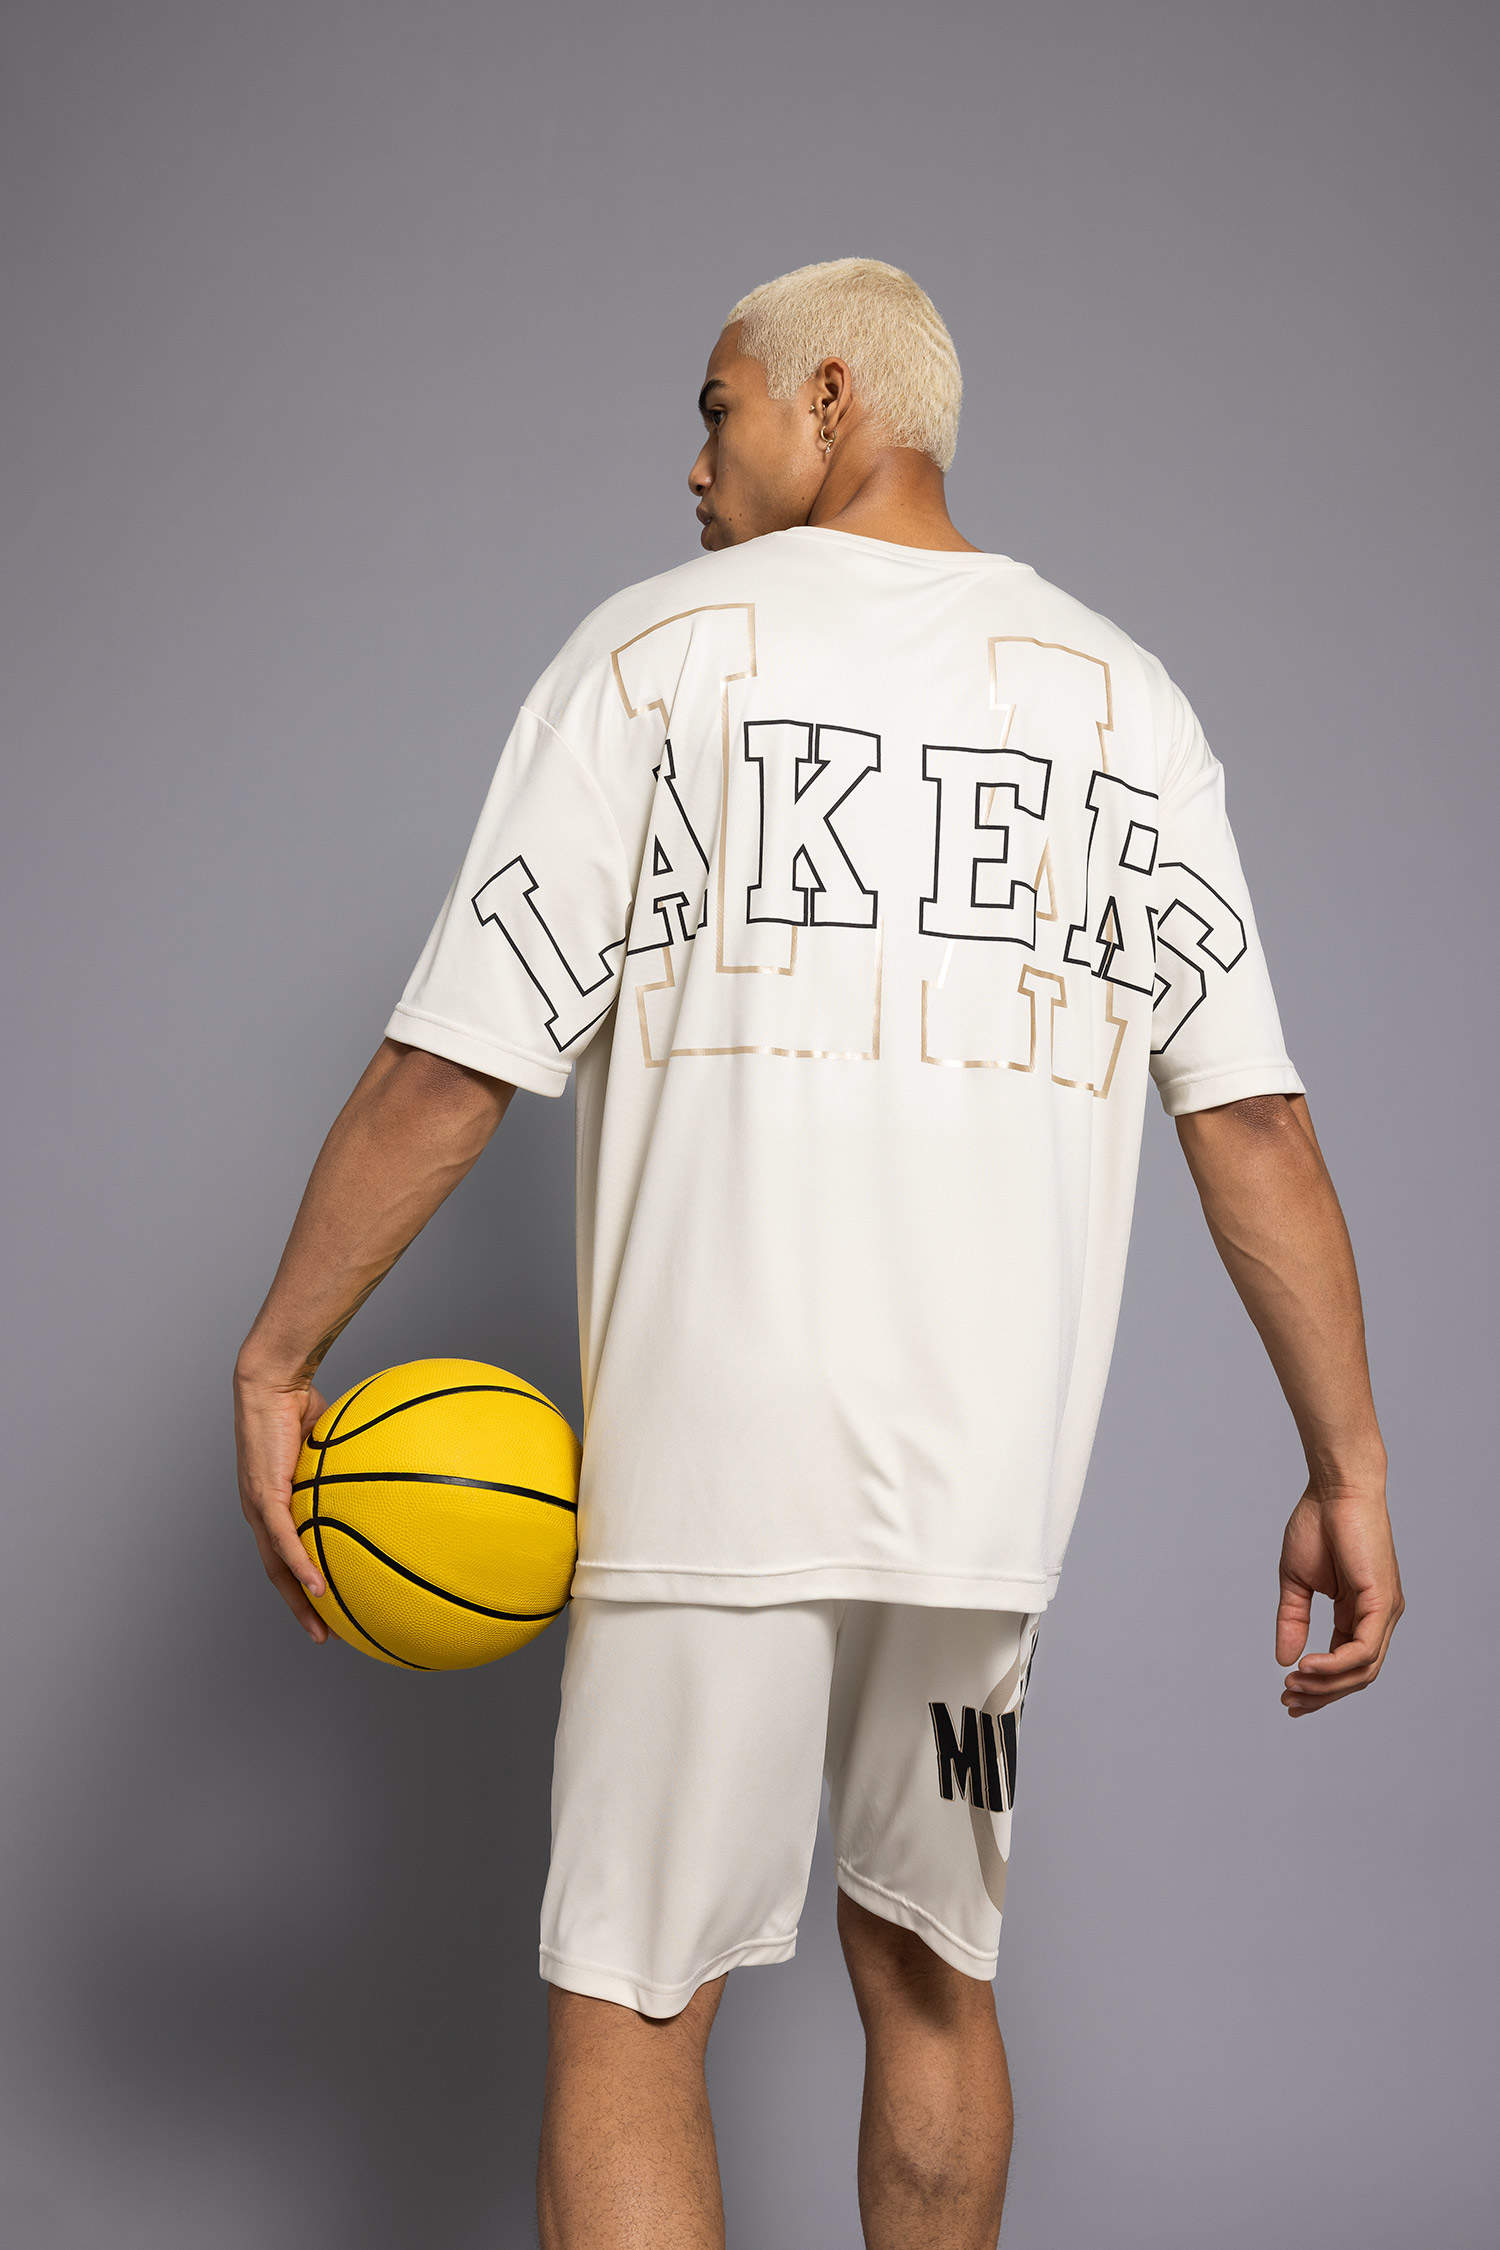 Los Angeles Lakers NBA Tee